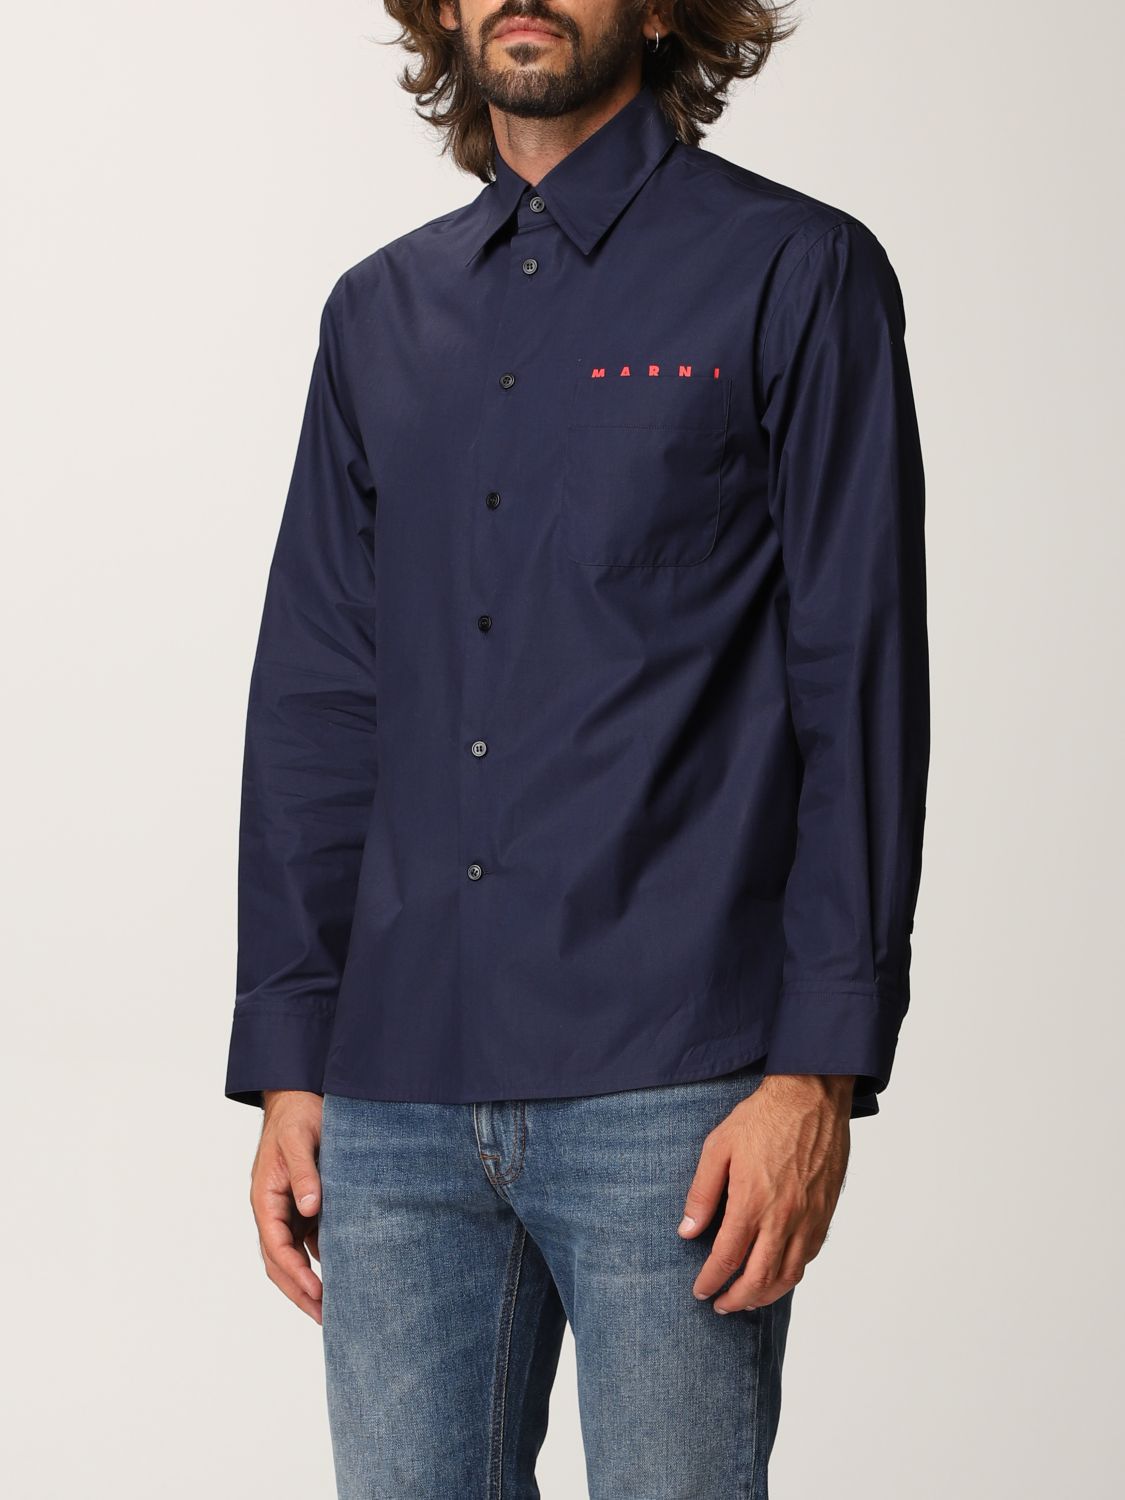 MARNI: shirt in cotton poplin with logo - Navy | Marni shirt 